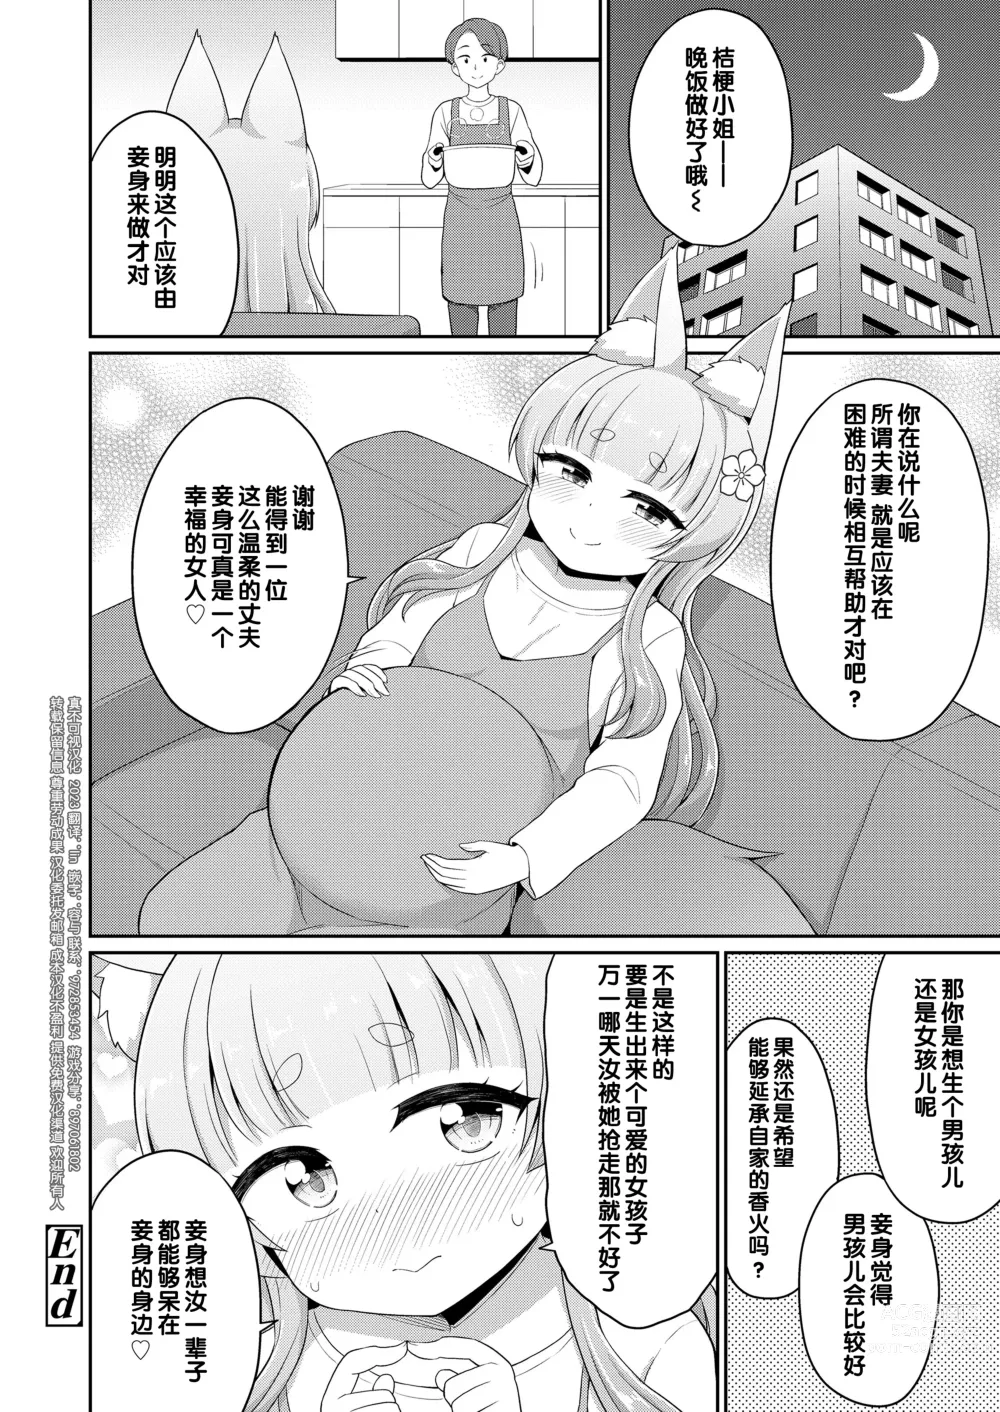 Page 52 of manga 婚活 1-2